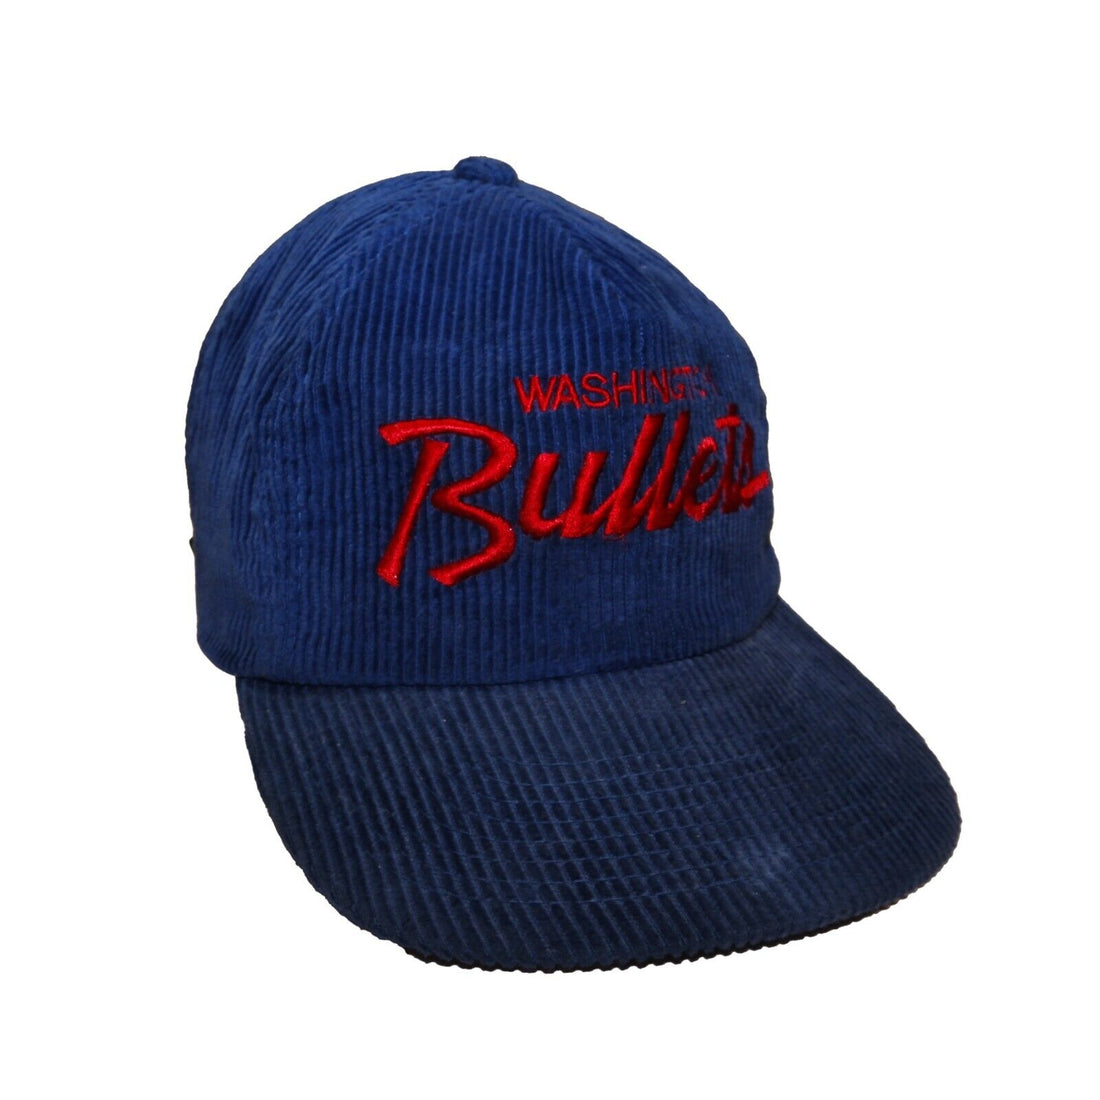 Vintage Washington Bullet Corduroy Sports Specialties Strapback Hat Cap OSFA NBA